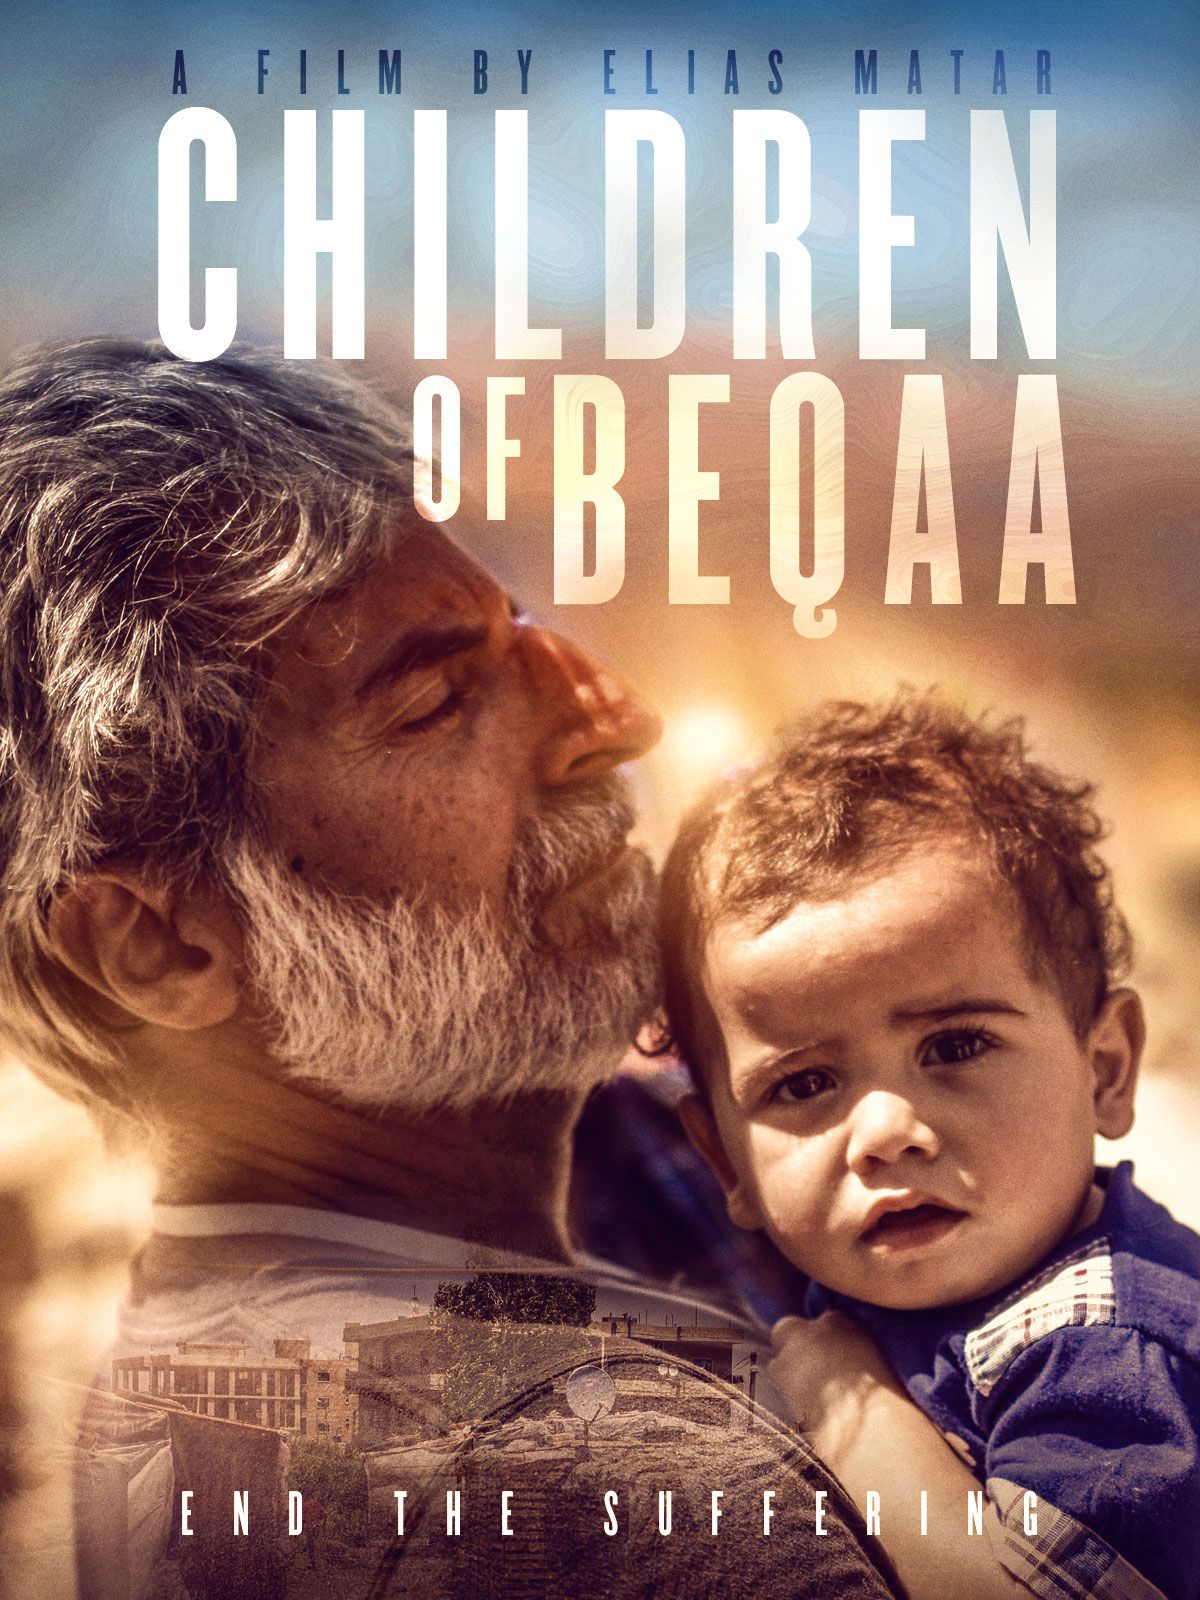 Keyart for the movie Children of Beqaa